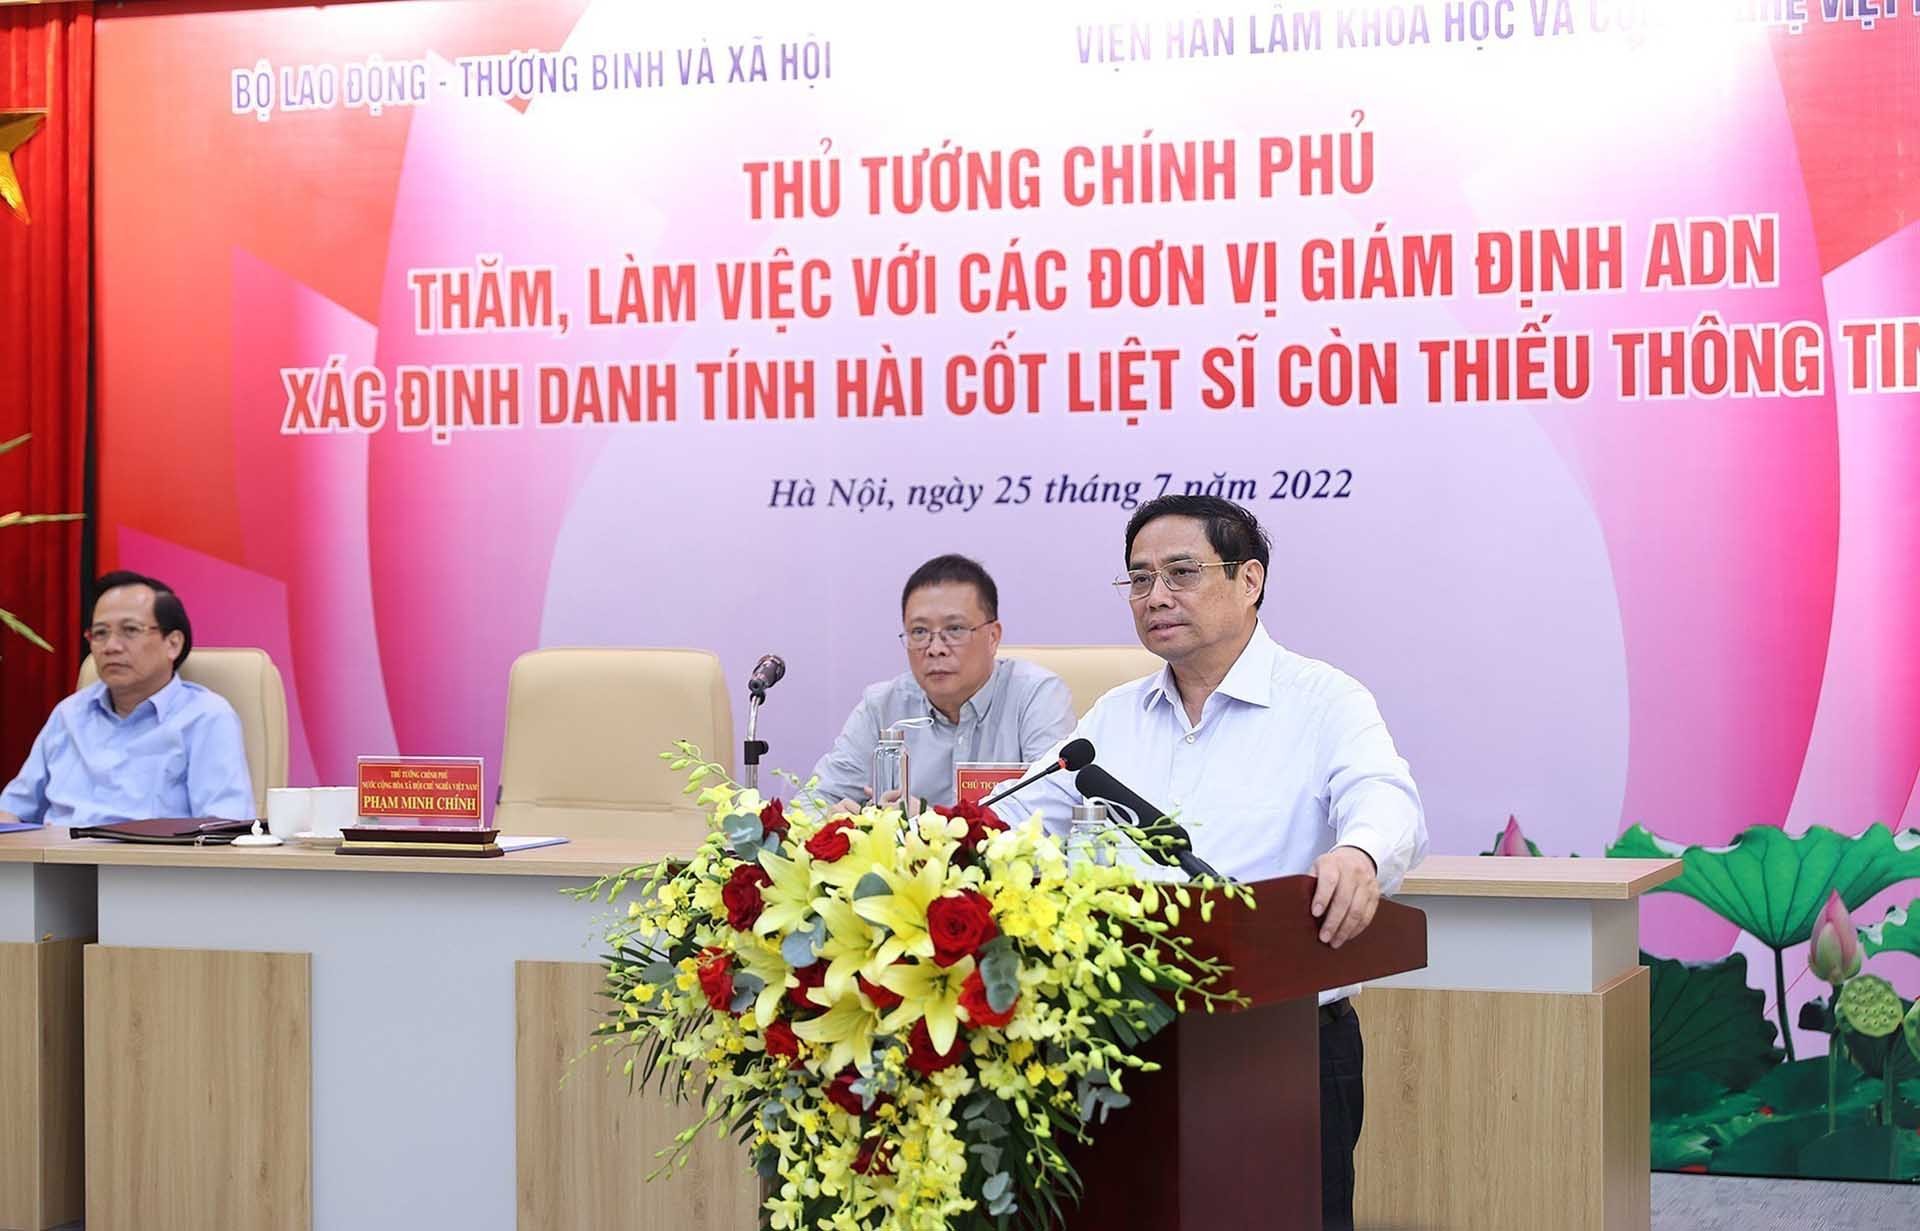 Thủ tướng Phạm Minh Chính phát biểu tại buổi làm việc với các đơn vị giám định ADN xác định danh tính hài cốt liệt sĩ. (Nguồn: TTXVN)